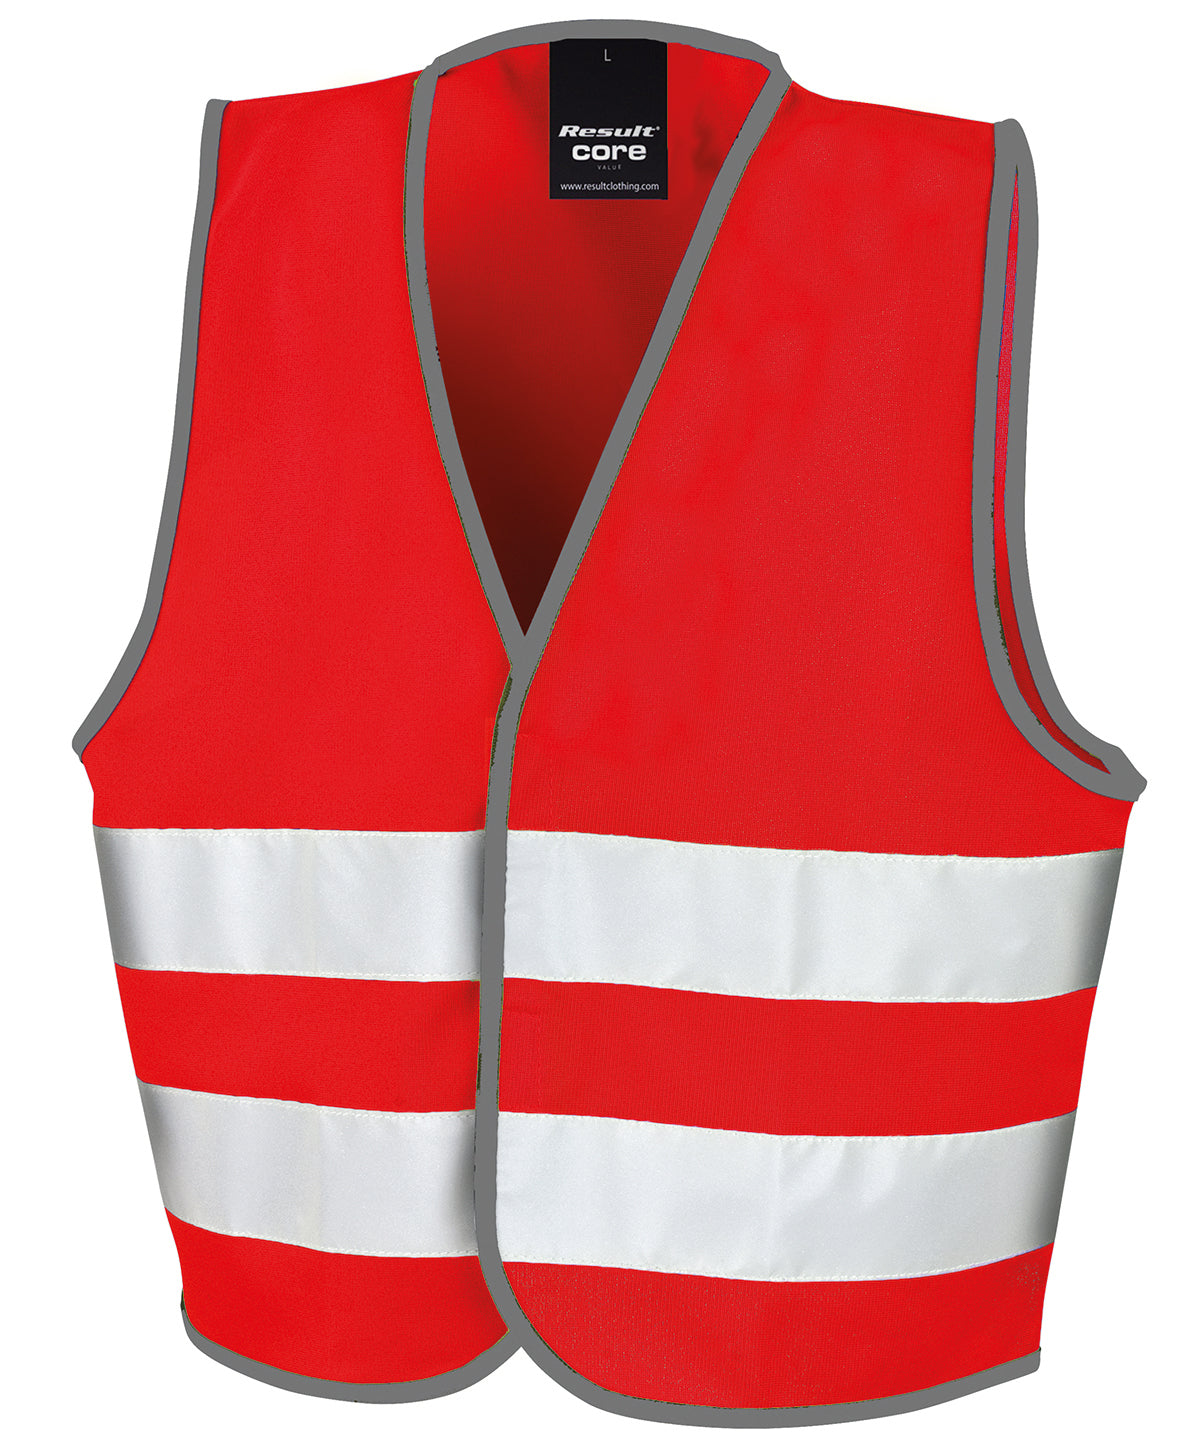 Core junior safety vest